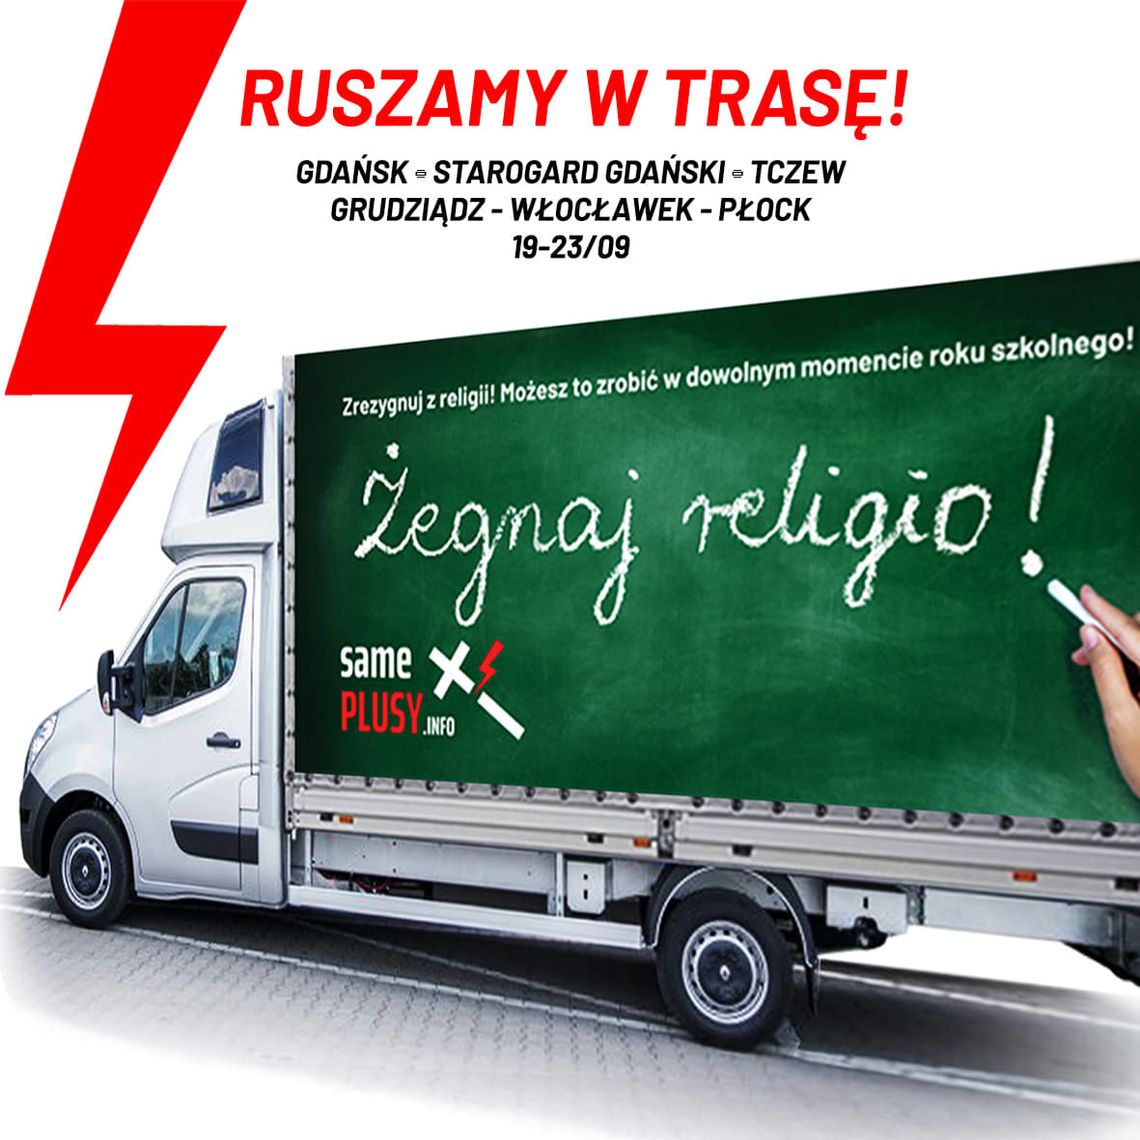 Furgonetka #ŻegnajReligio wyrusza w pierwszą trasę po Polsce i w piątek 23 września przybędzie do Włocławka